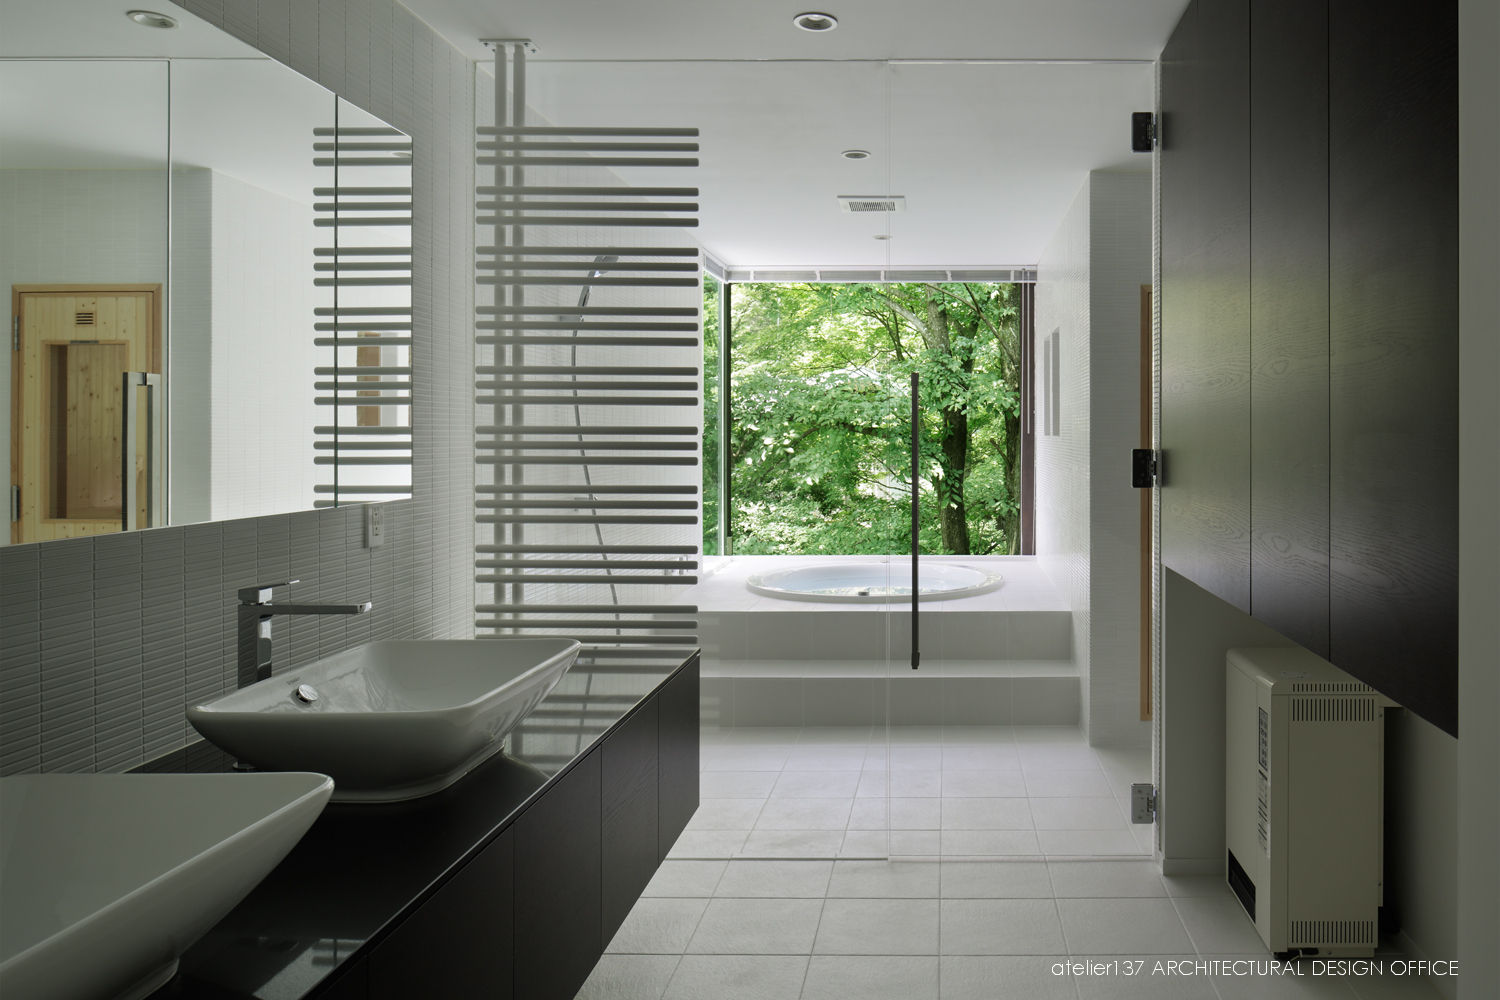 035カルイザワハウス, atelier137 ARCHITECTURAL DESIGN OFFICE atelier137 ARCHITECTURAL DESIGN OFFICE Modern bathroom Tiles